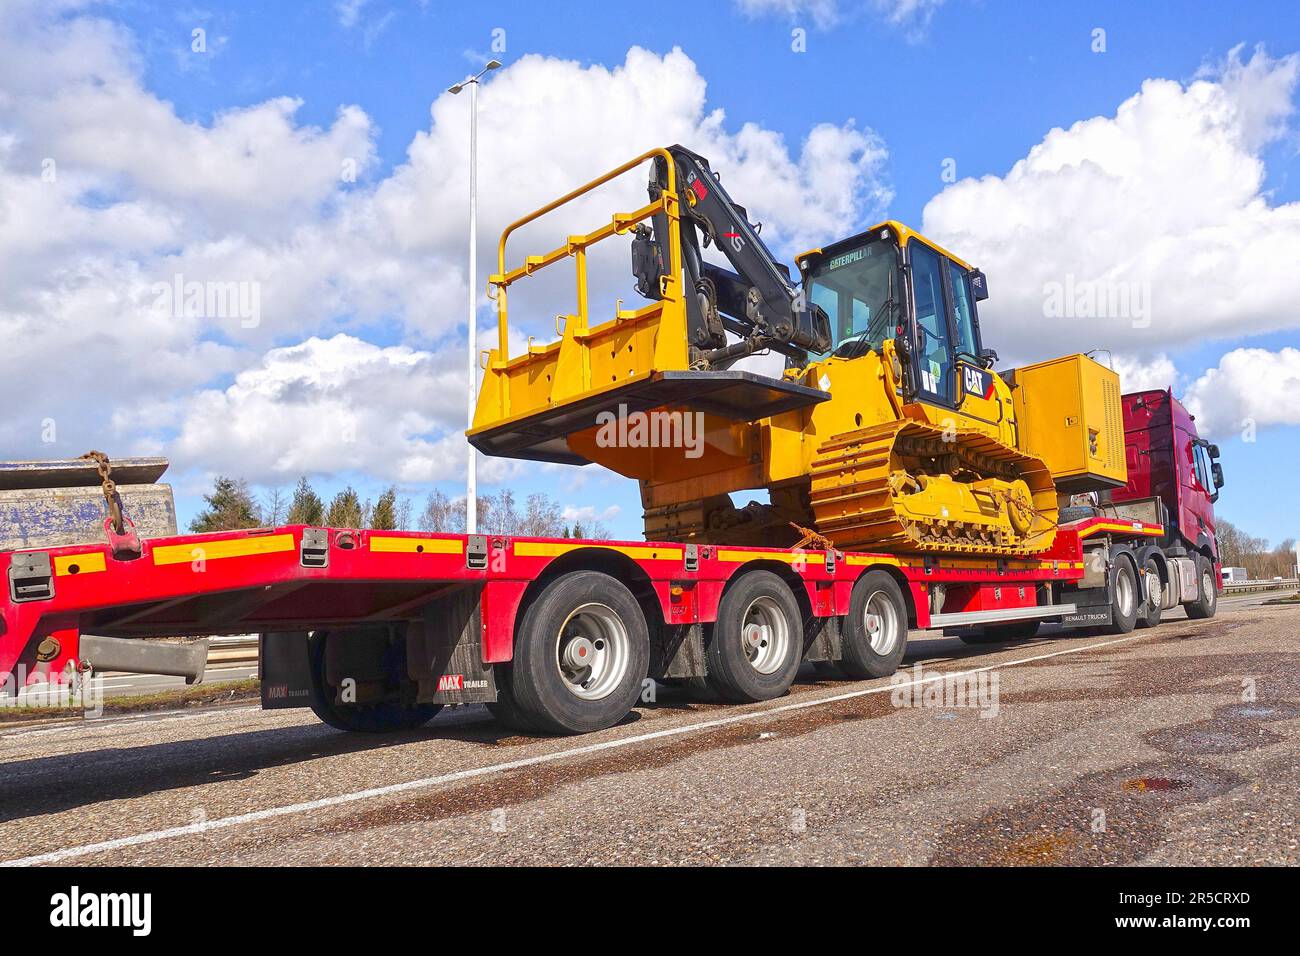 AACHEN, NRW, ALLEMAGNE - 12 mars 2020 : transport lourd d'une grosse chenille sur un camion de remorque spécial à faible charge, stationnement sur un arrêt de camion Banque D'Images